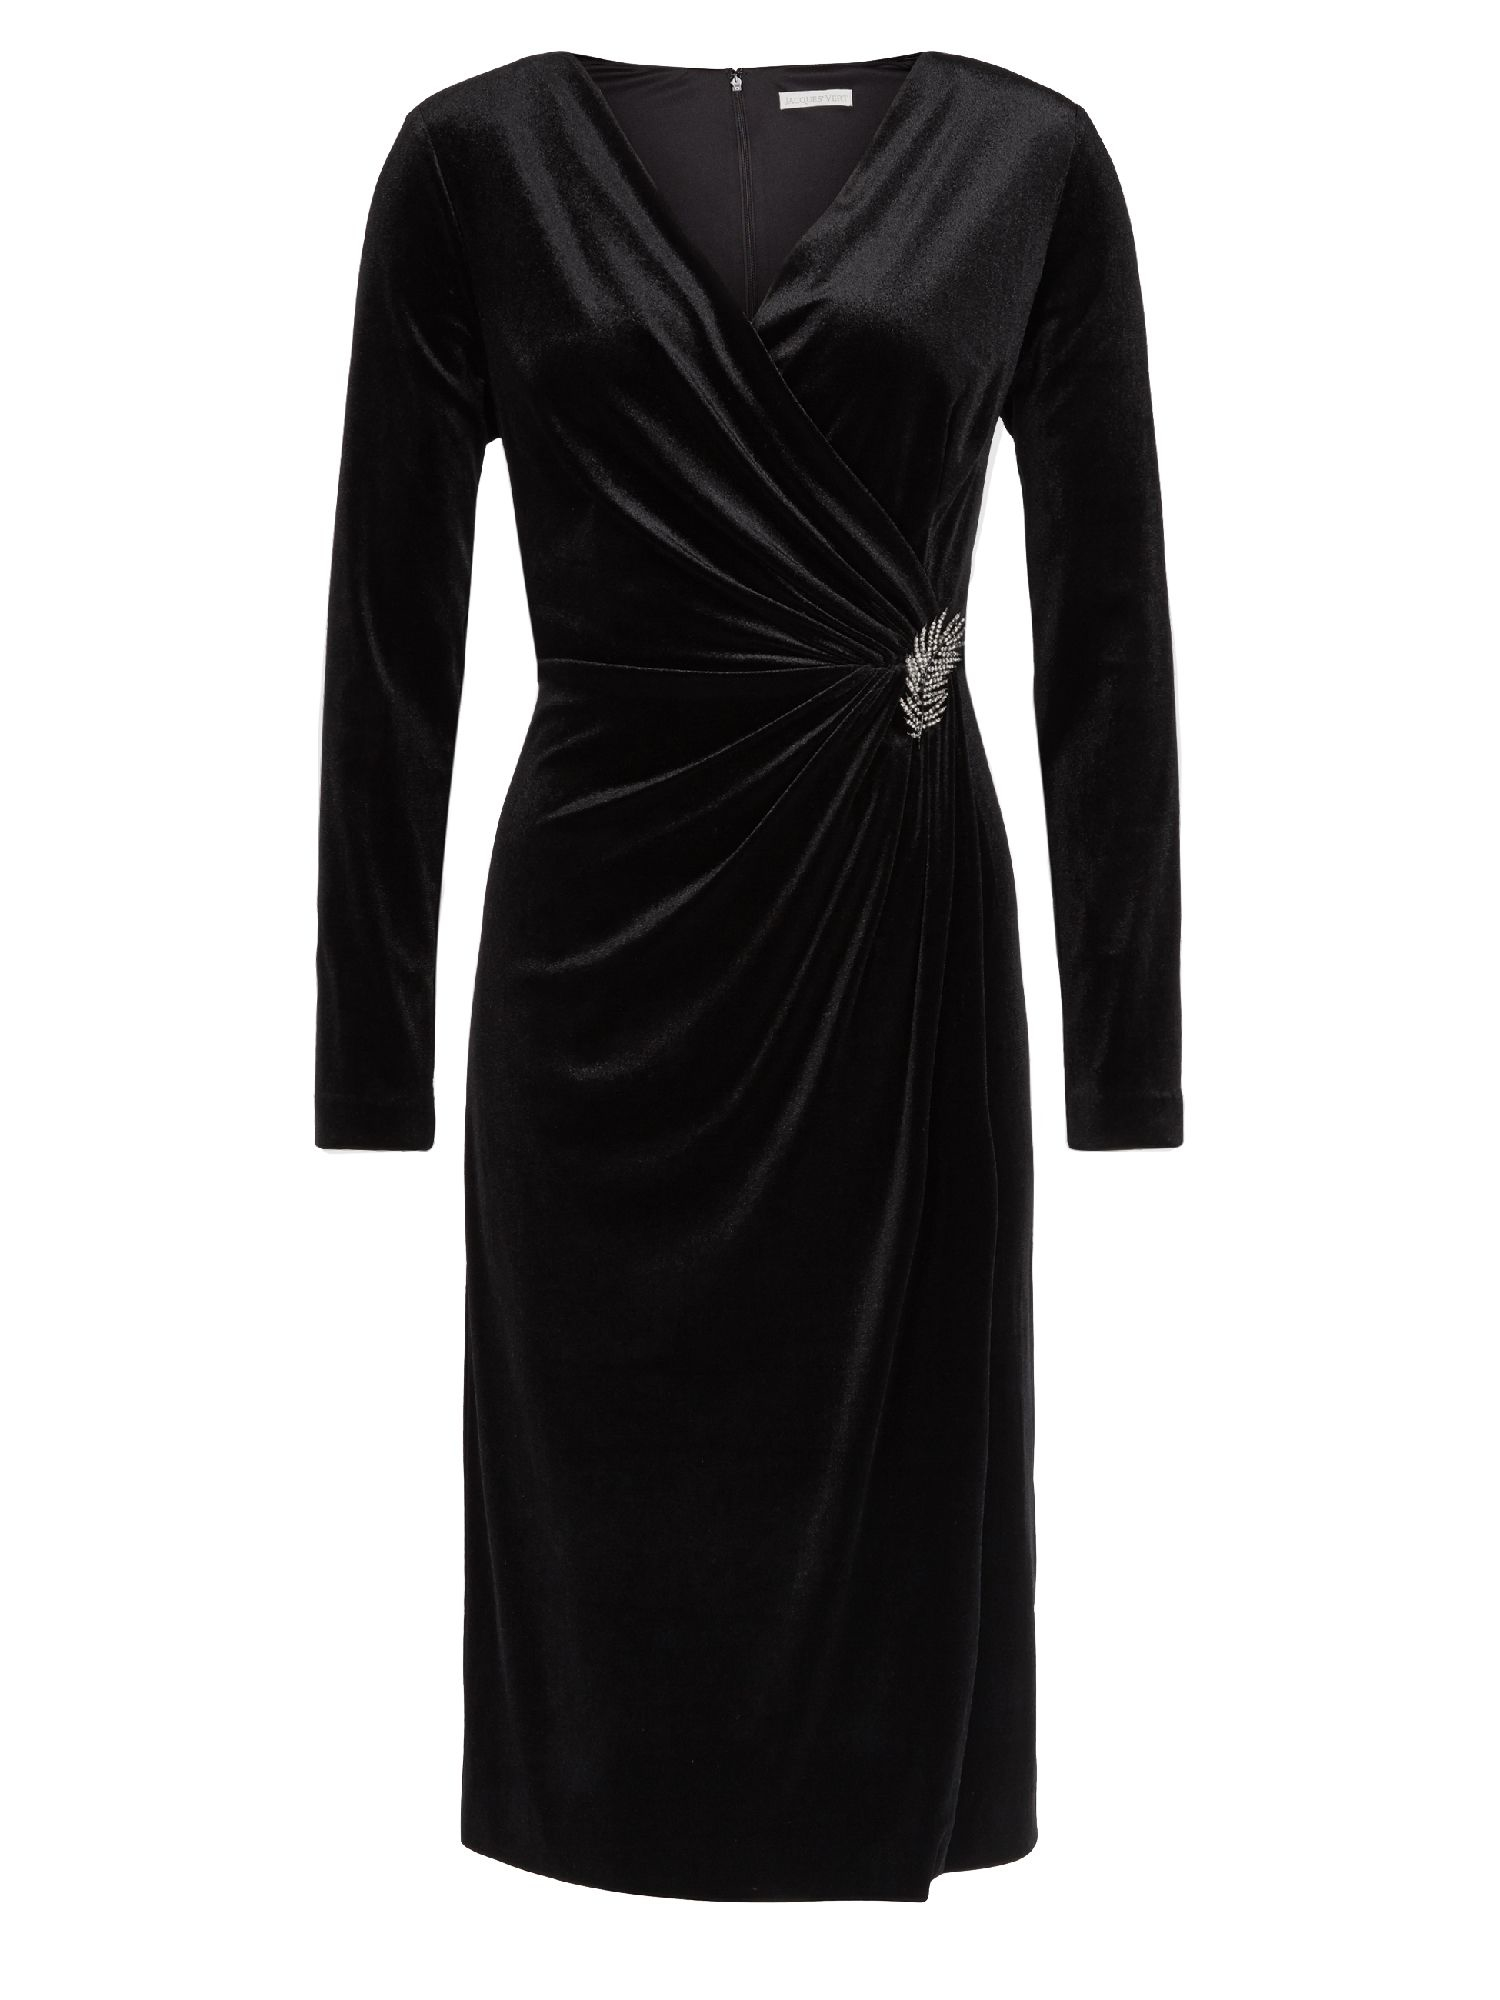 Jacques vert Velvet Cocktail Dress in Black - Lyst